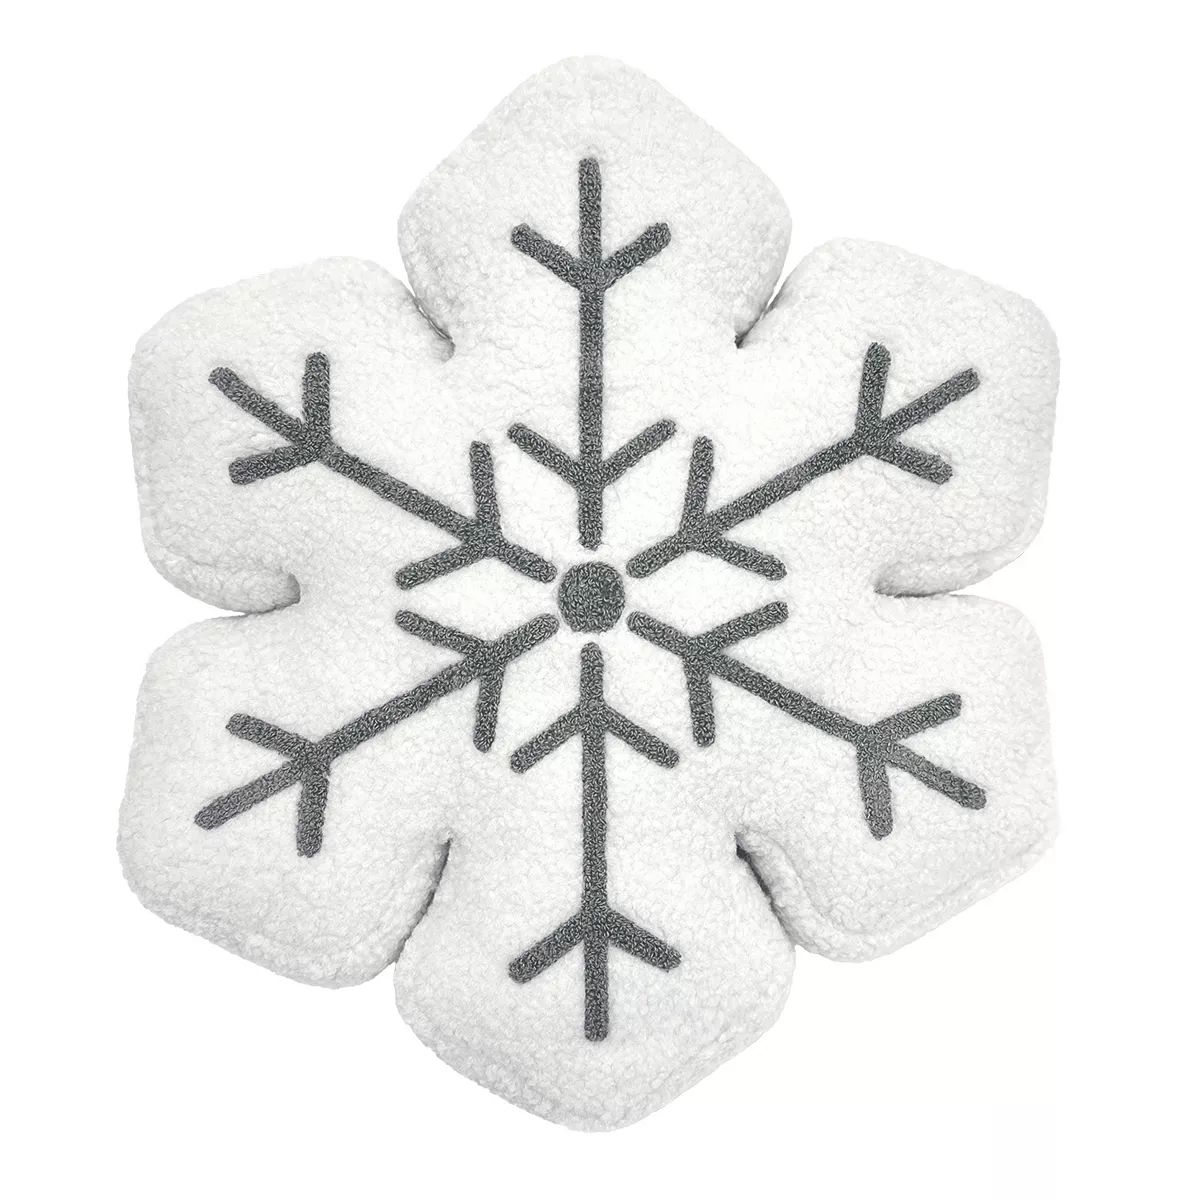 St. Nicholas Square® Snowflake Shaped Throw Pillow | Kohl's